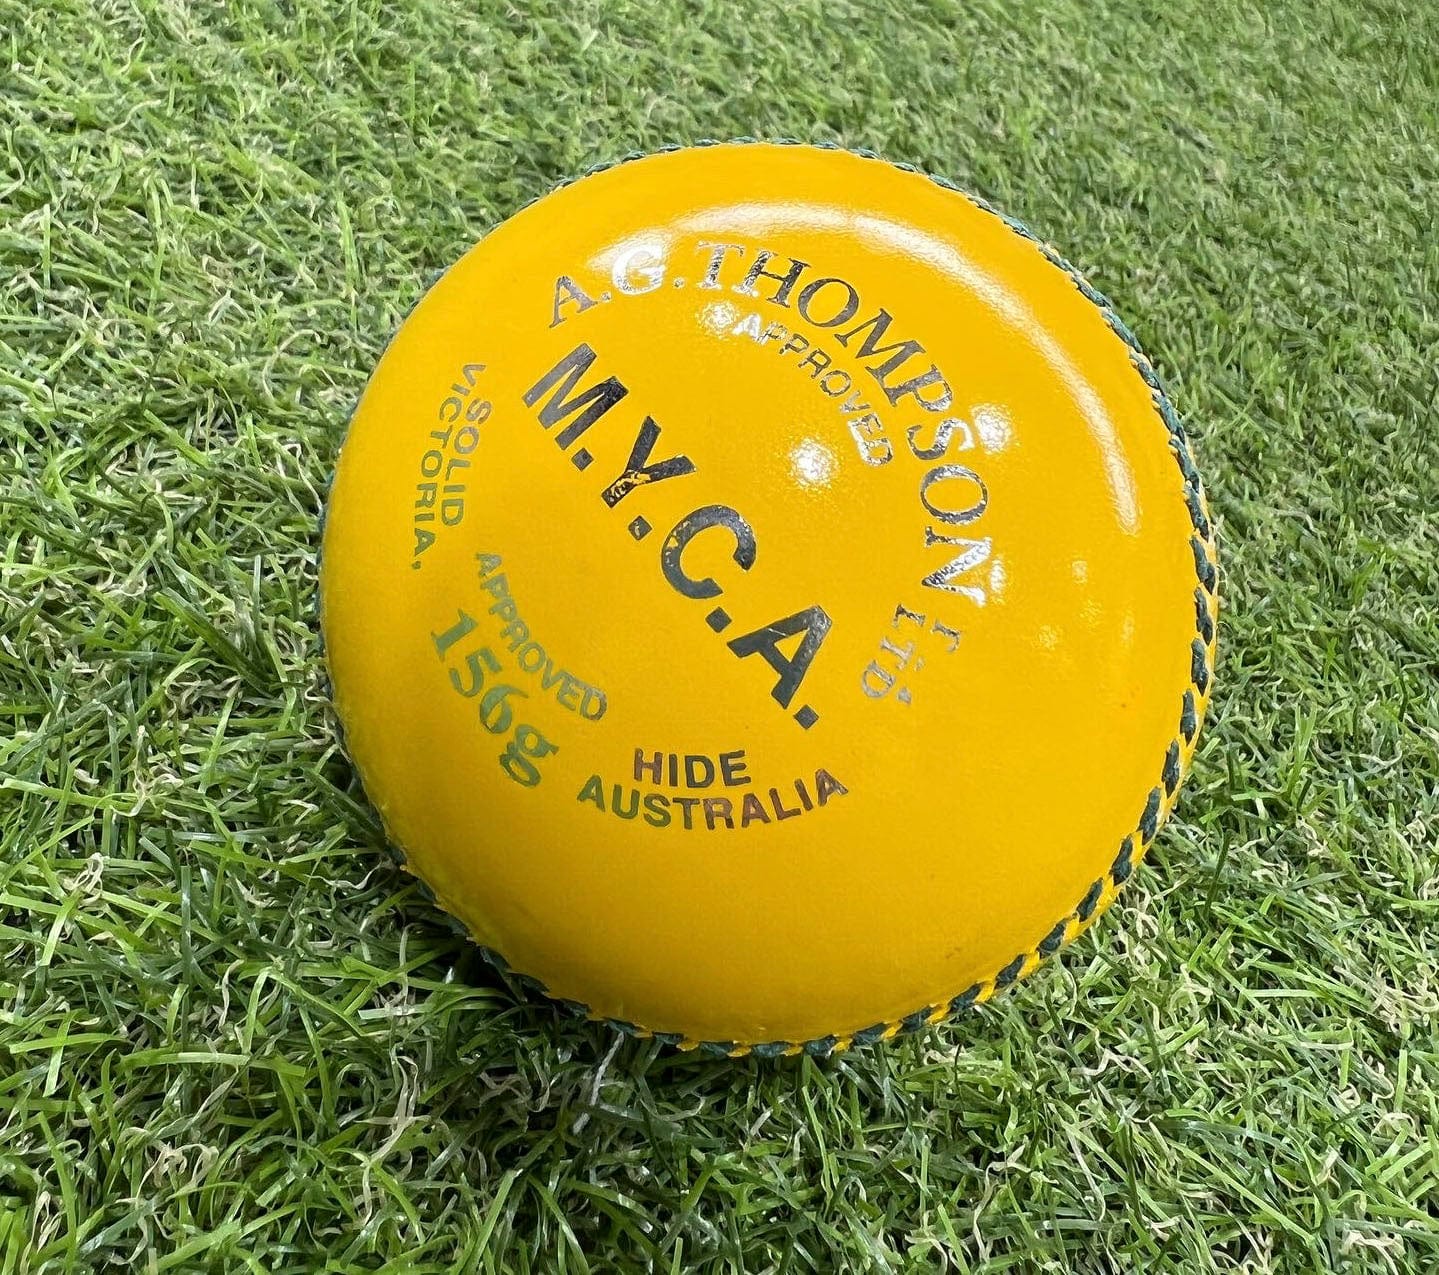 Kookaburra Cricket Balls 156g / Yellow Kookaburra MYCA Silver Cricket Ball - 156g